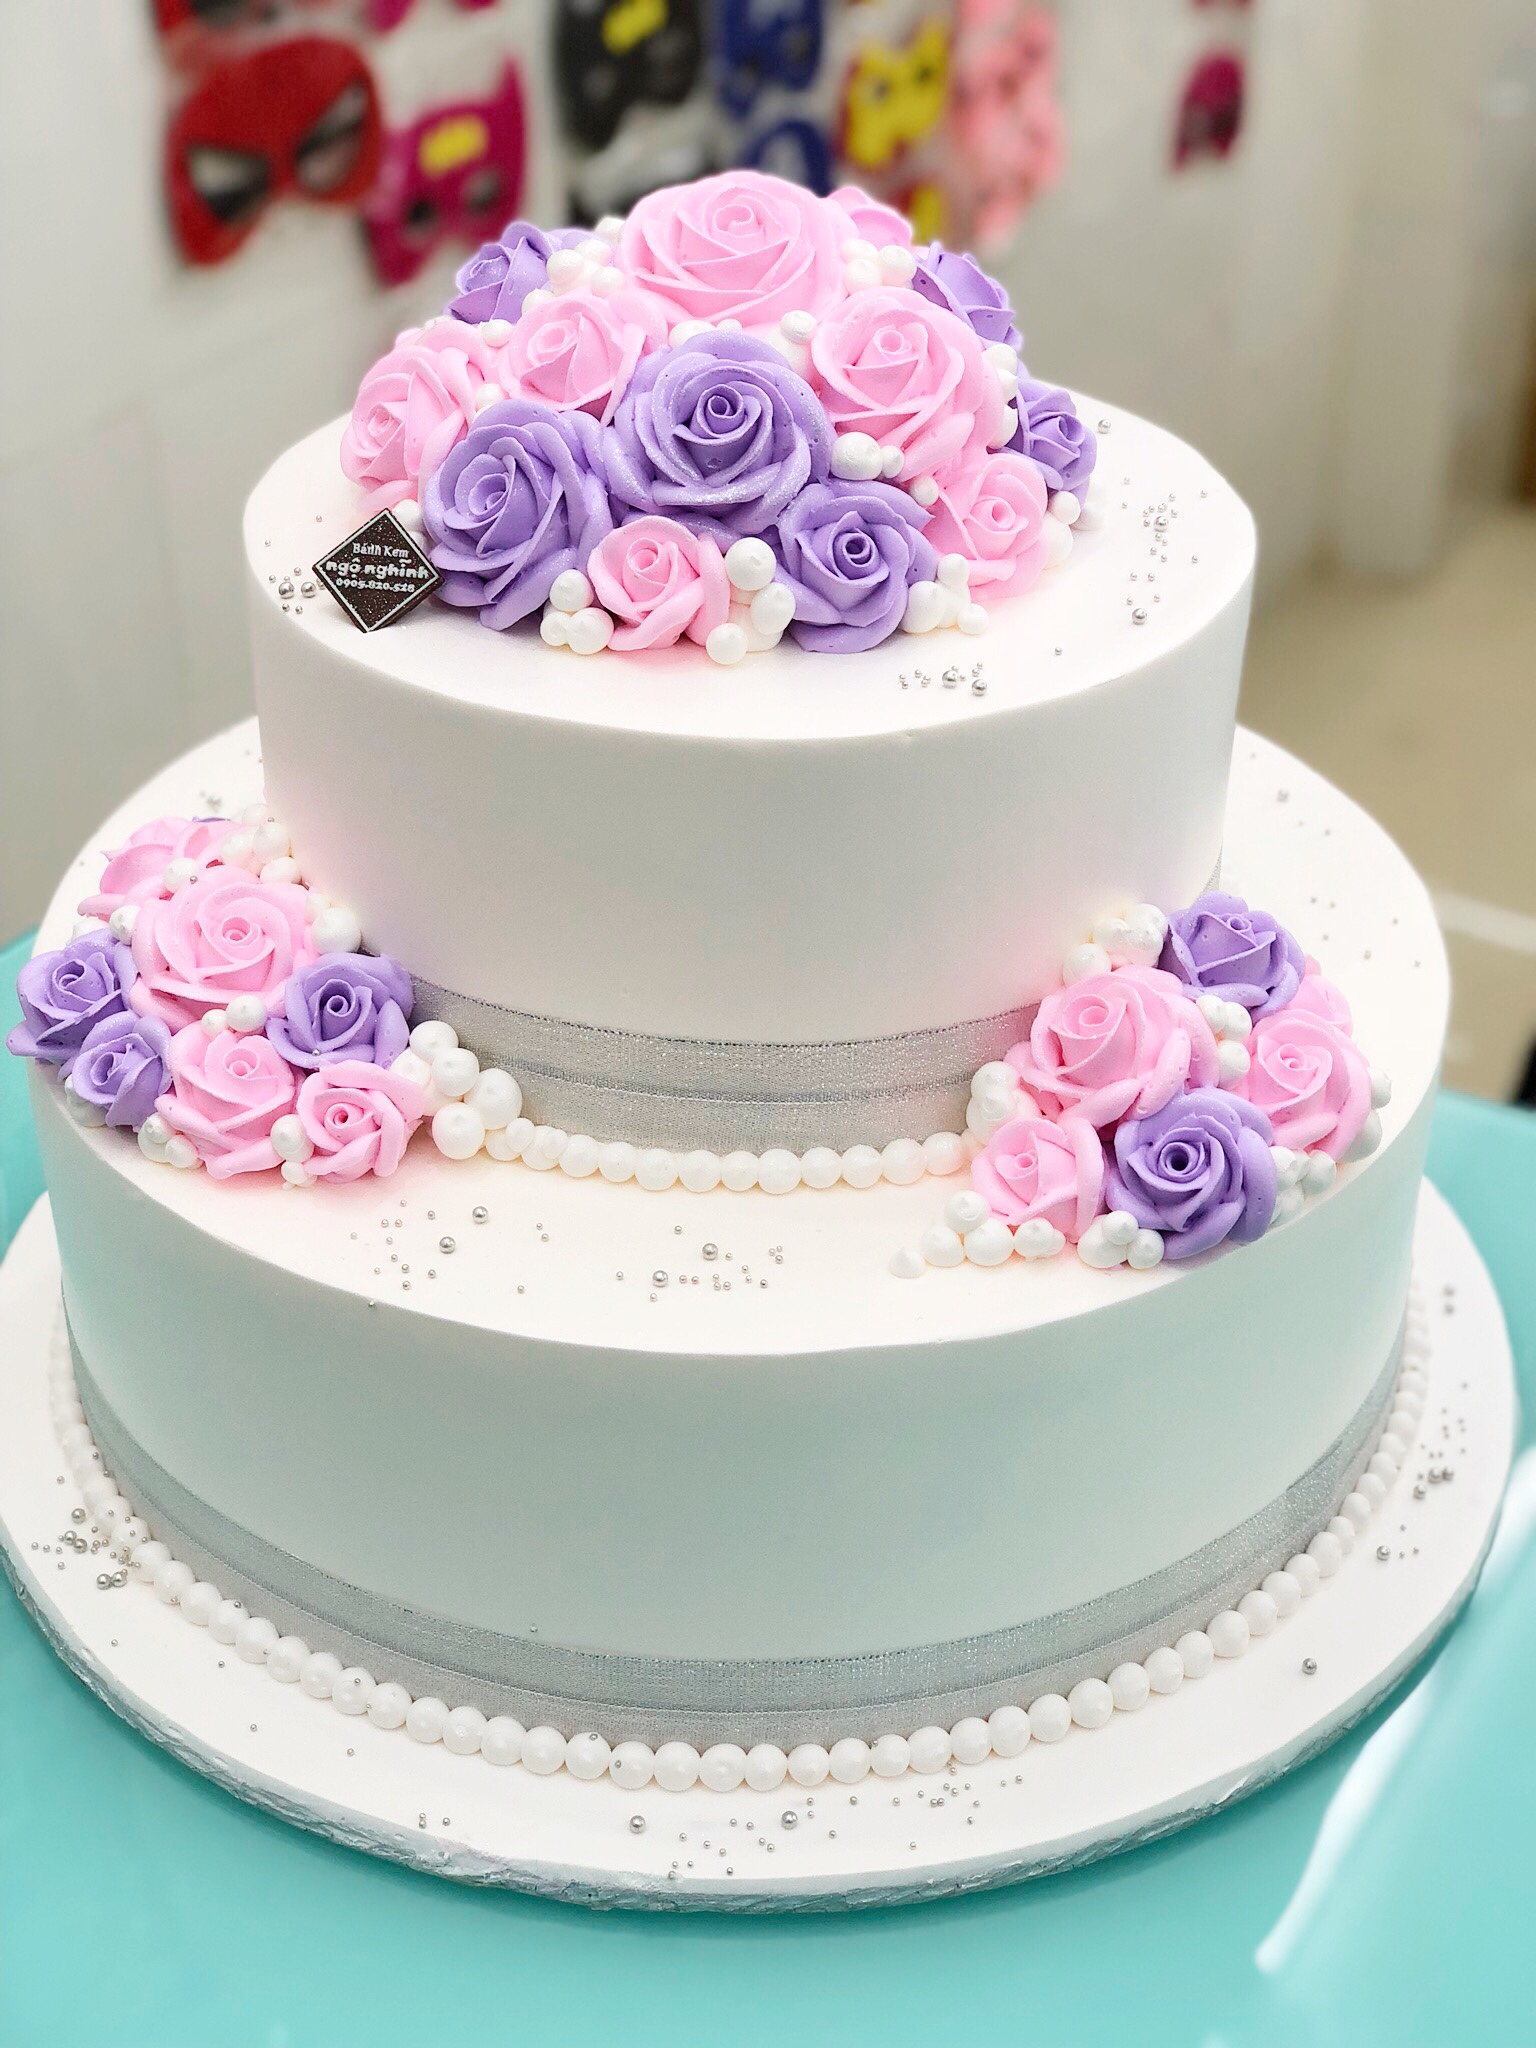 Các kiểu trang trí bánh sinh nhật hiện nay vô cùng đa dạng và phong phú, tuy nhiên, bánh sinh nhật hai tầng hoa hồng luôn là một lựa chọn tuyệt vời. Chúng được trang trí với những bông hoa hồng xinh đẹp và những chiếc lá mềm mại, hoà quyện trong màu sắc tươi tắn của kem bơ. Hãy cùng chiêm ngưỡng hình ảnh đẹp nhất của bánh sinh nhật hai tầng hoa hồng tại đây.